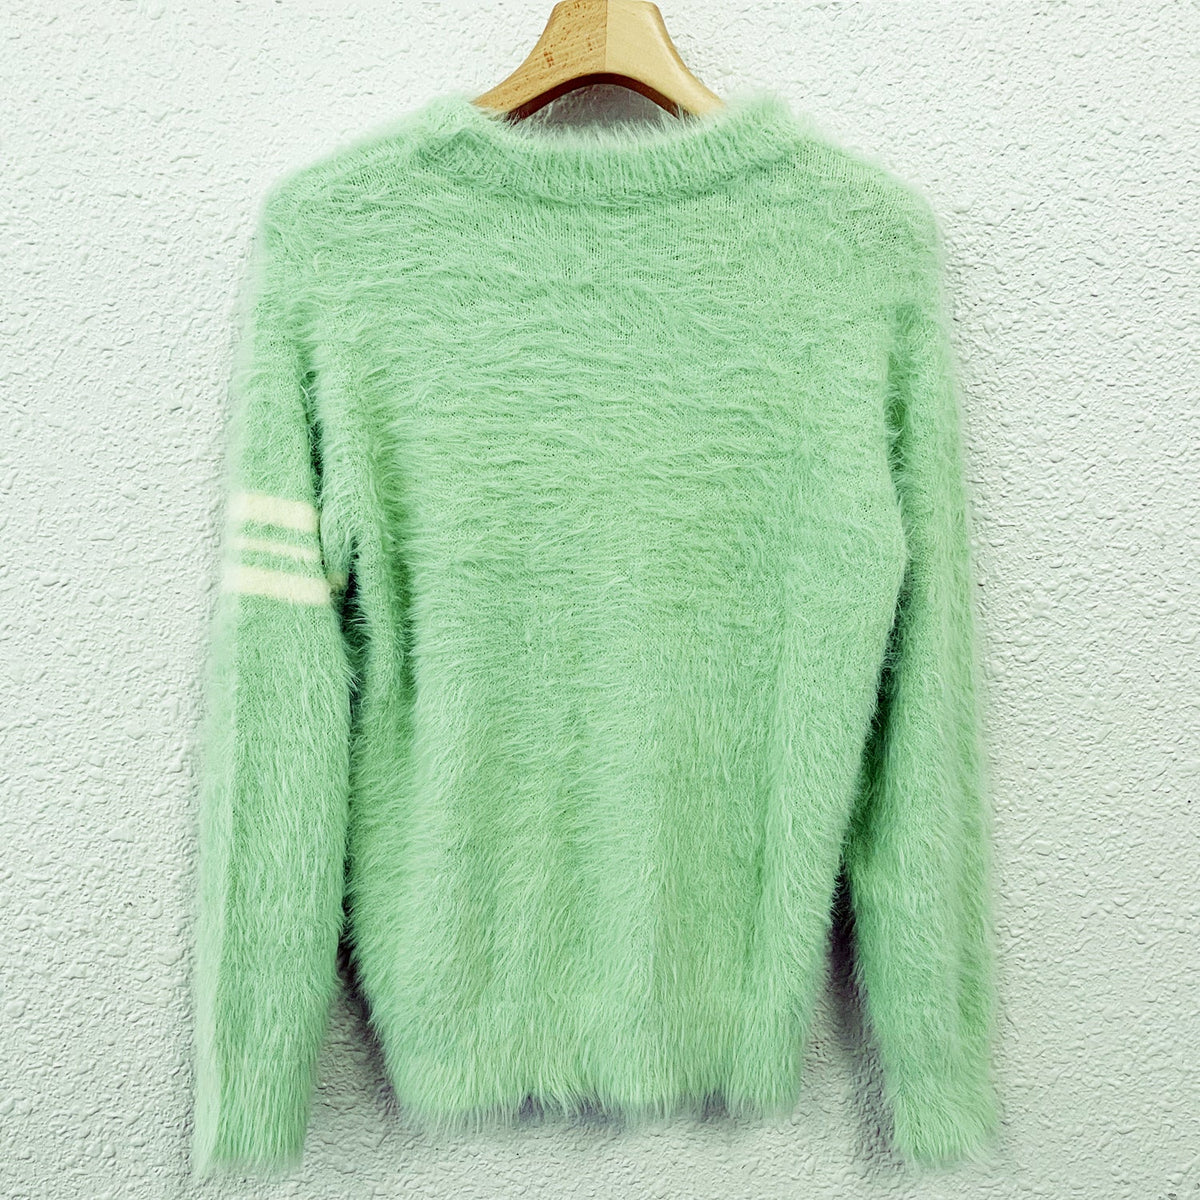 【通常販売】Fur knit pull over / MINT GREEN